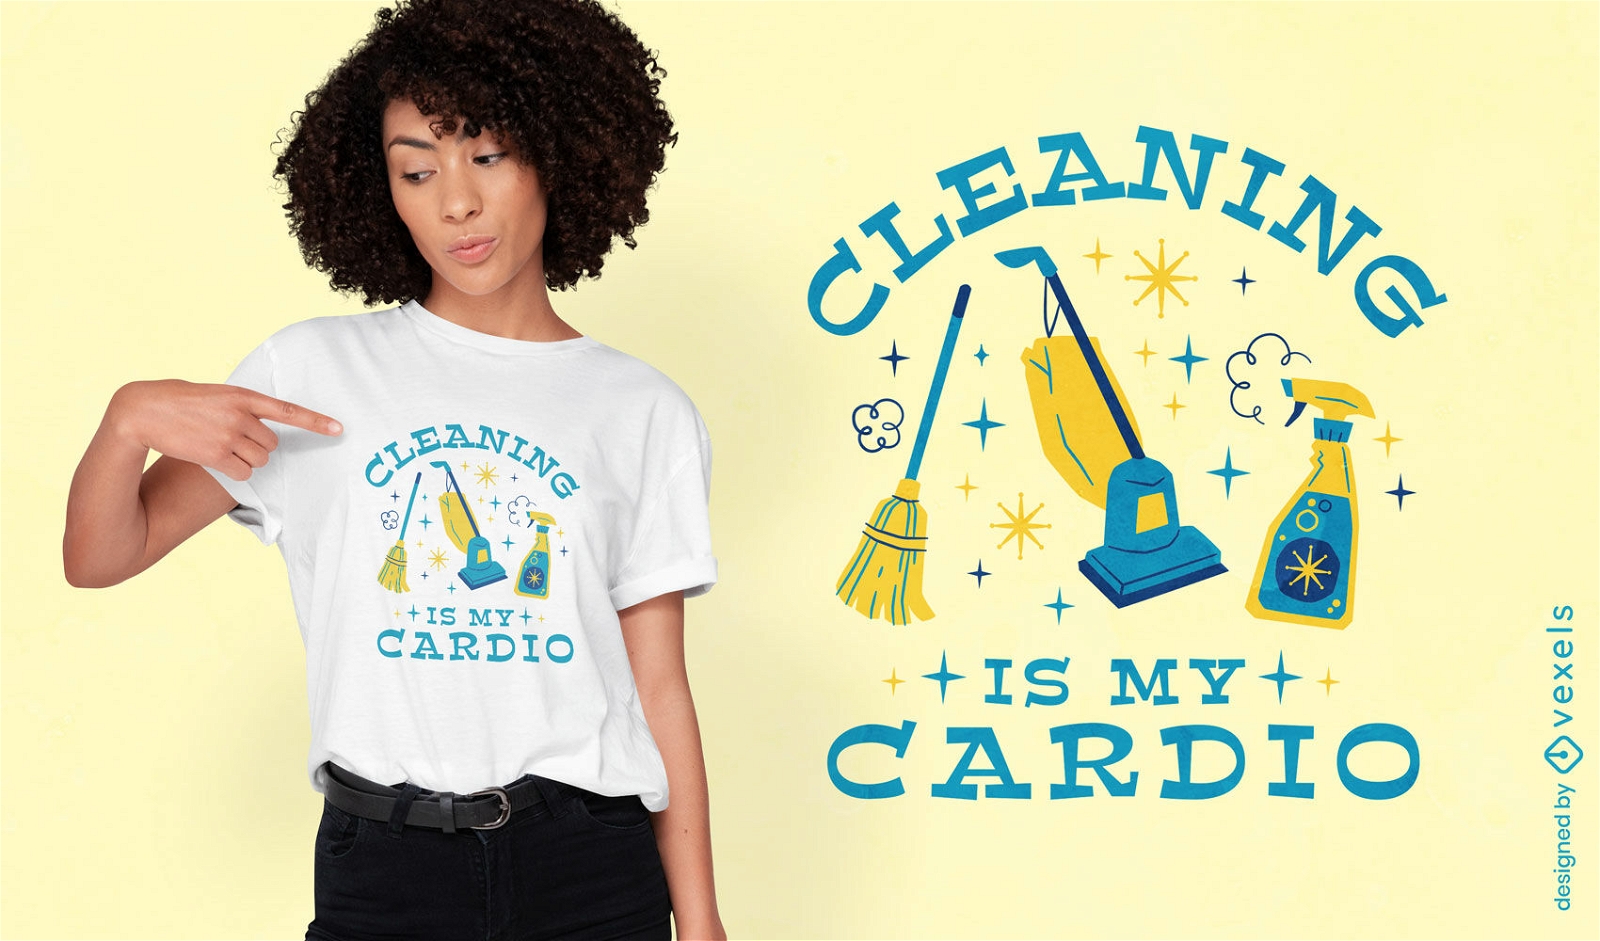 Diseño de camiseta con tema de limpieza saludable.